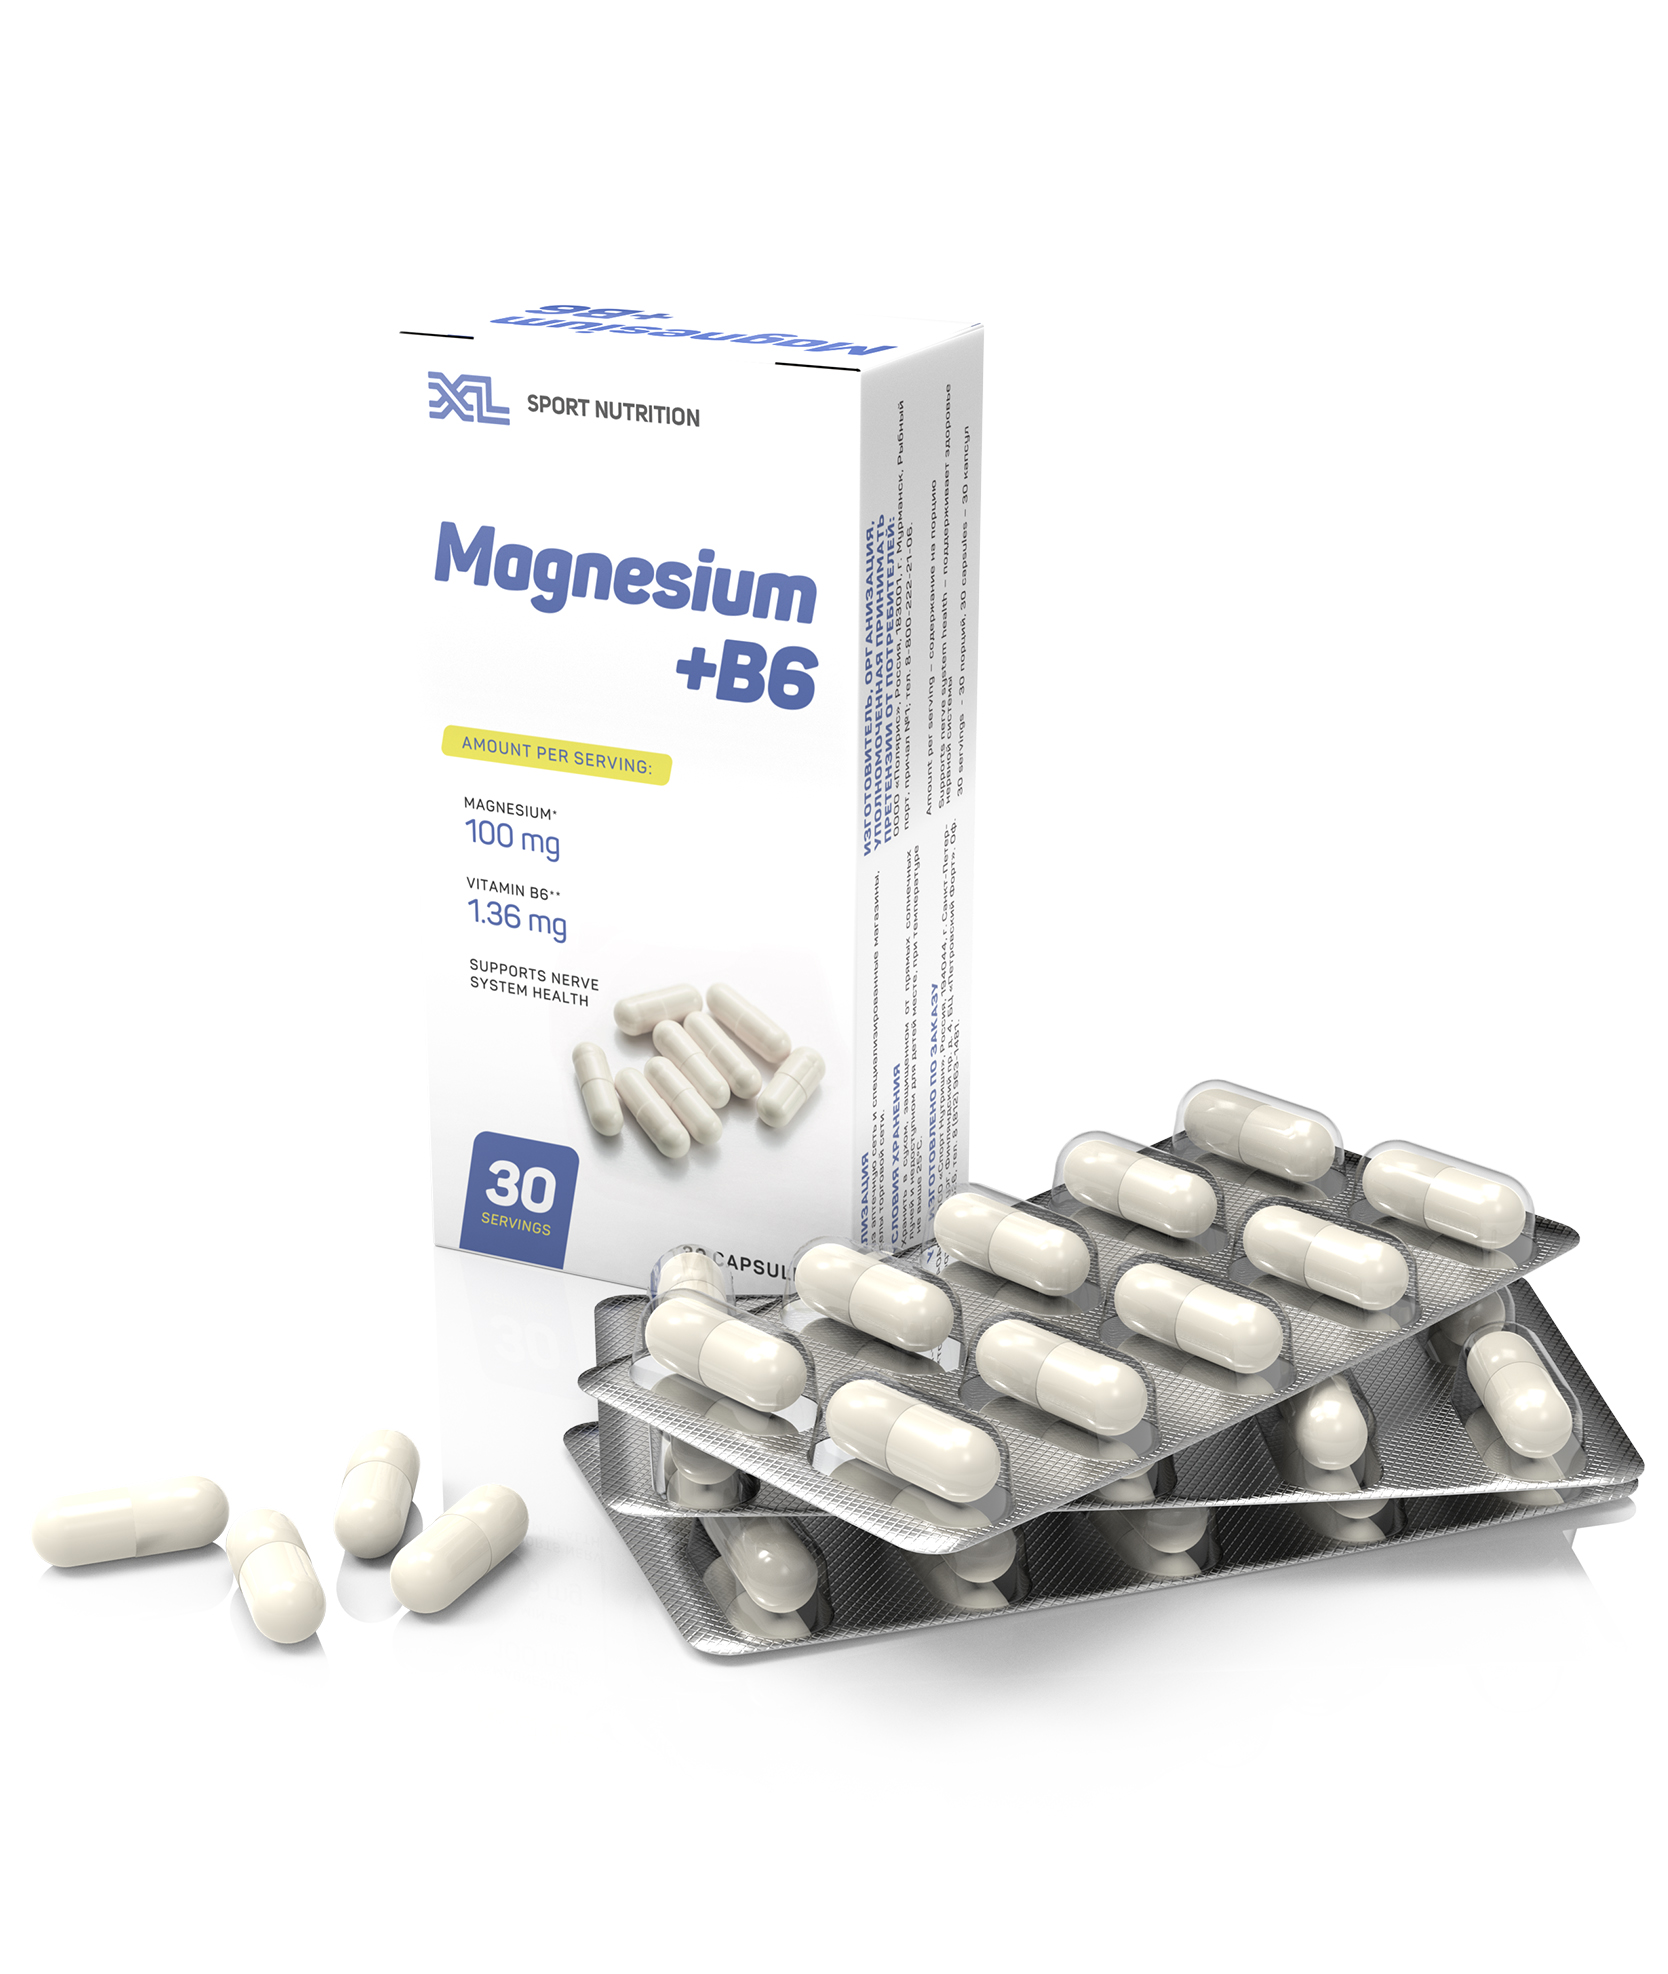 XL Magnesium + B6, 30 capsules